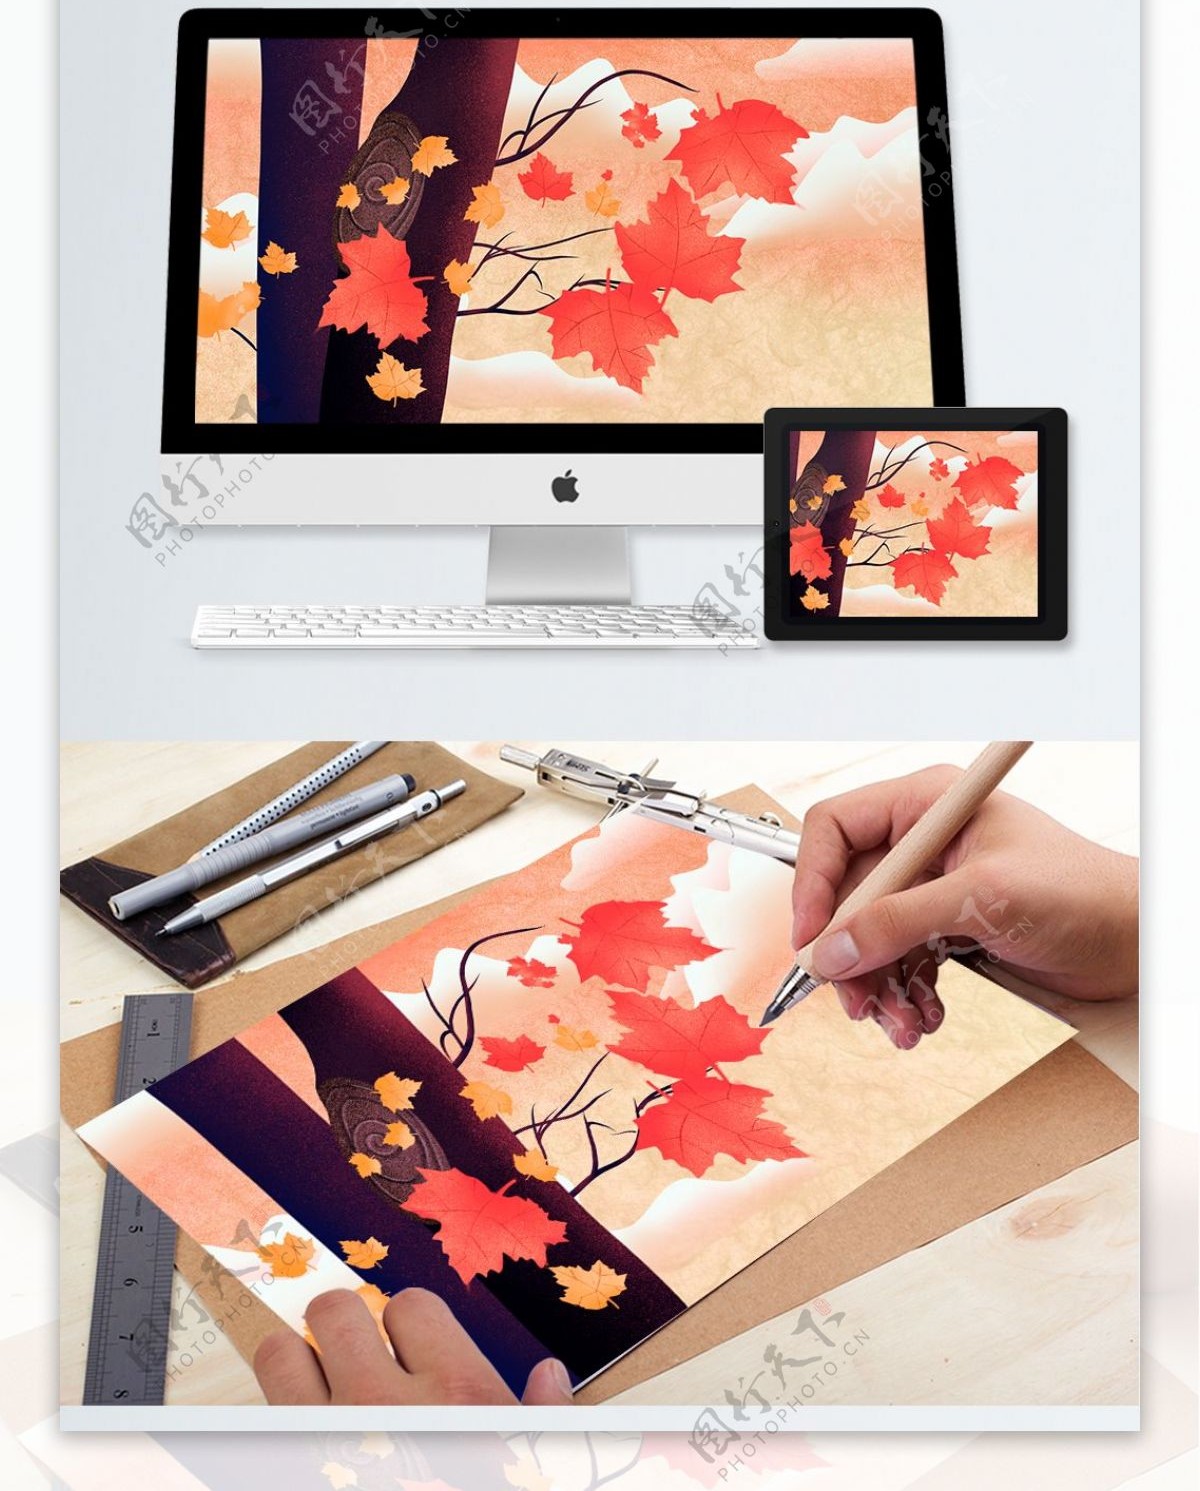 二十四节气秋分红色的枫叶手绘海报插画壁纸